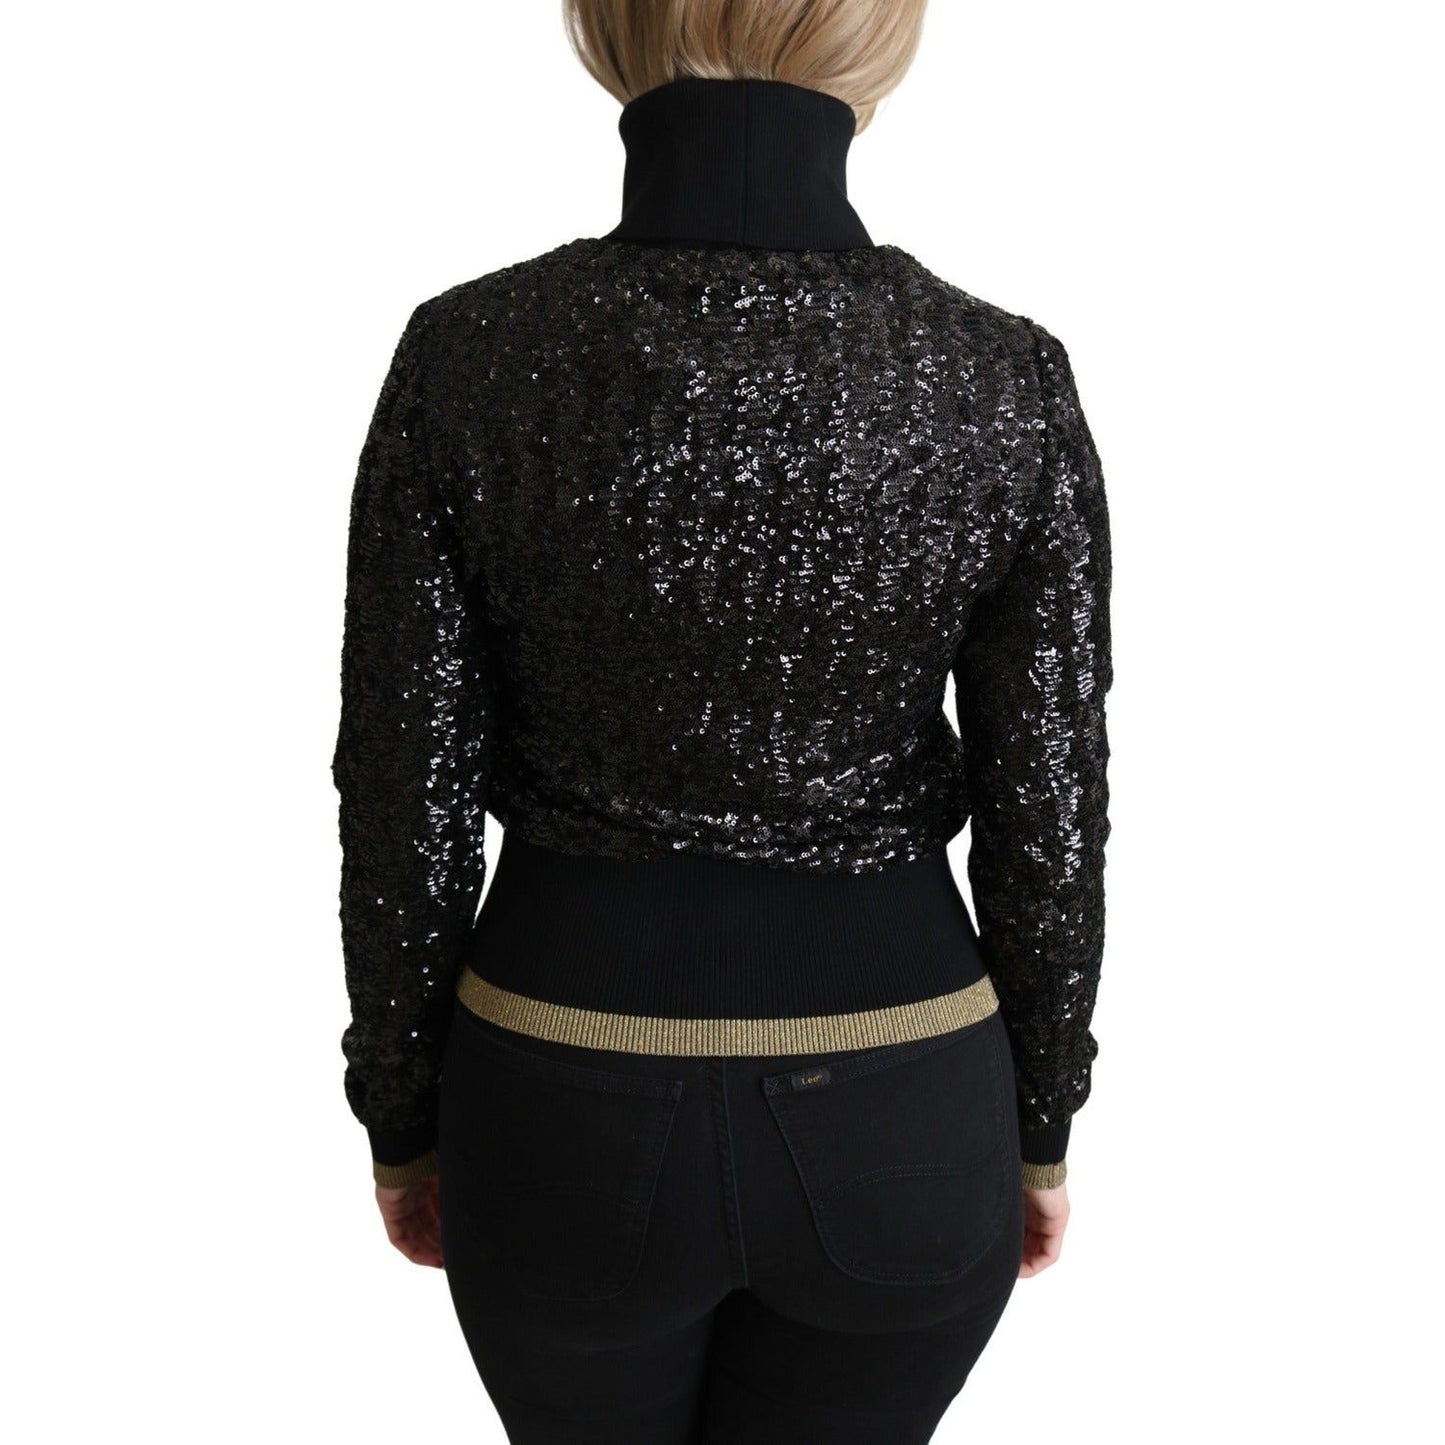 Dolce & Gabbana Elegant Sequined Turtleneck Sweater black-sequined-knitted-turtle-neck-sweater